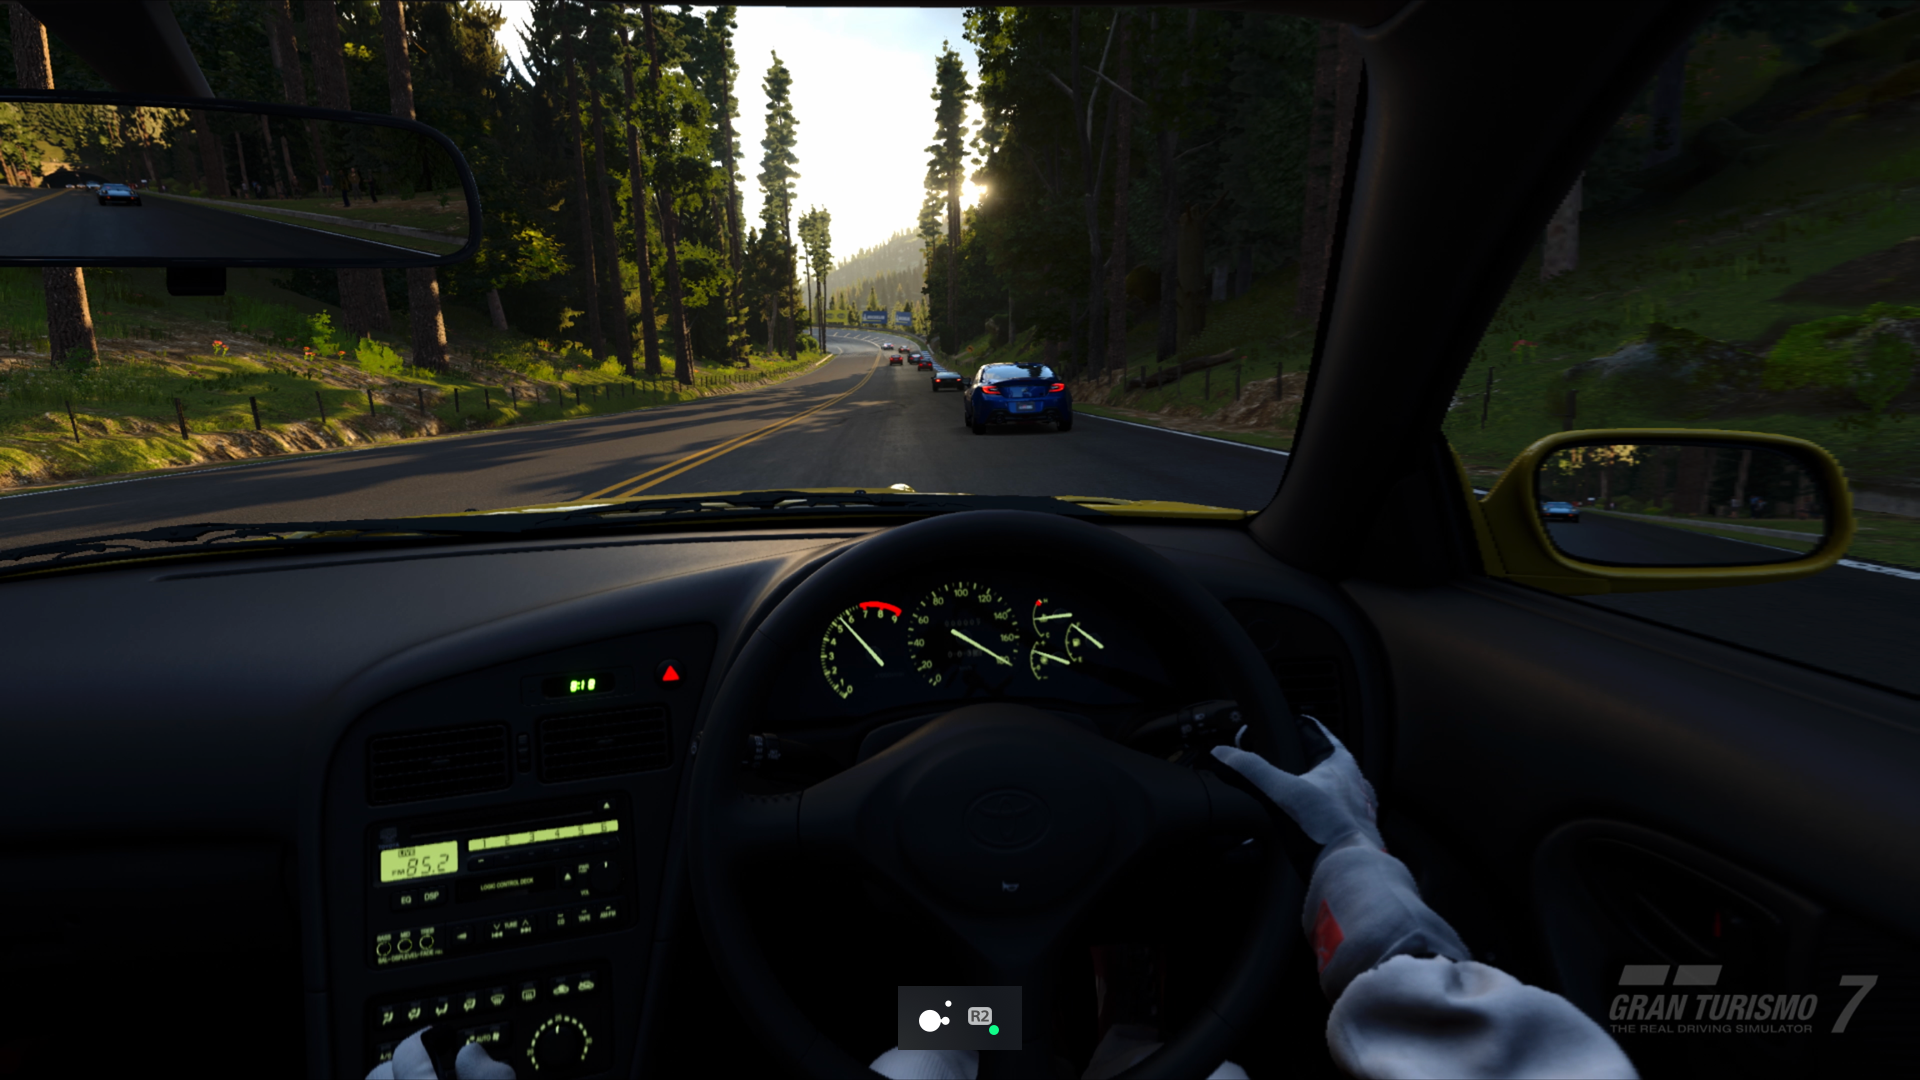  "Capture d'écran de Gran Turismo 7 sur PS5 avec le mode de basculement activé pour la touche R2 de la manette Access"